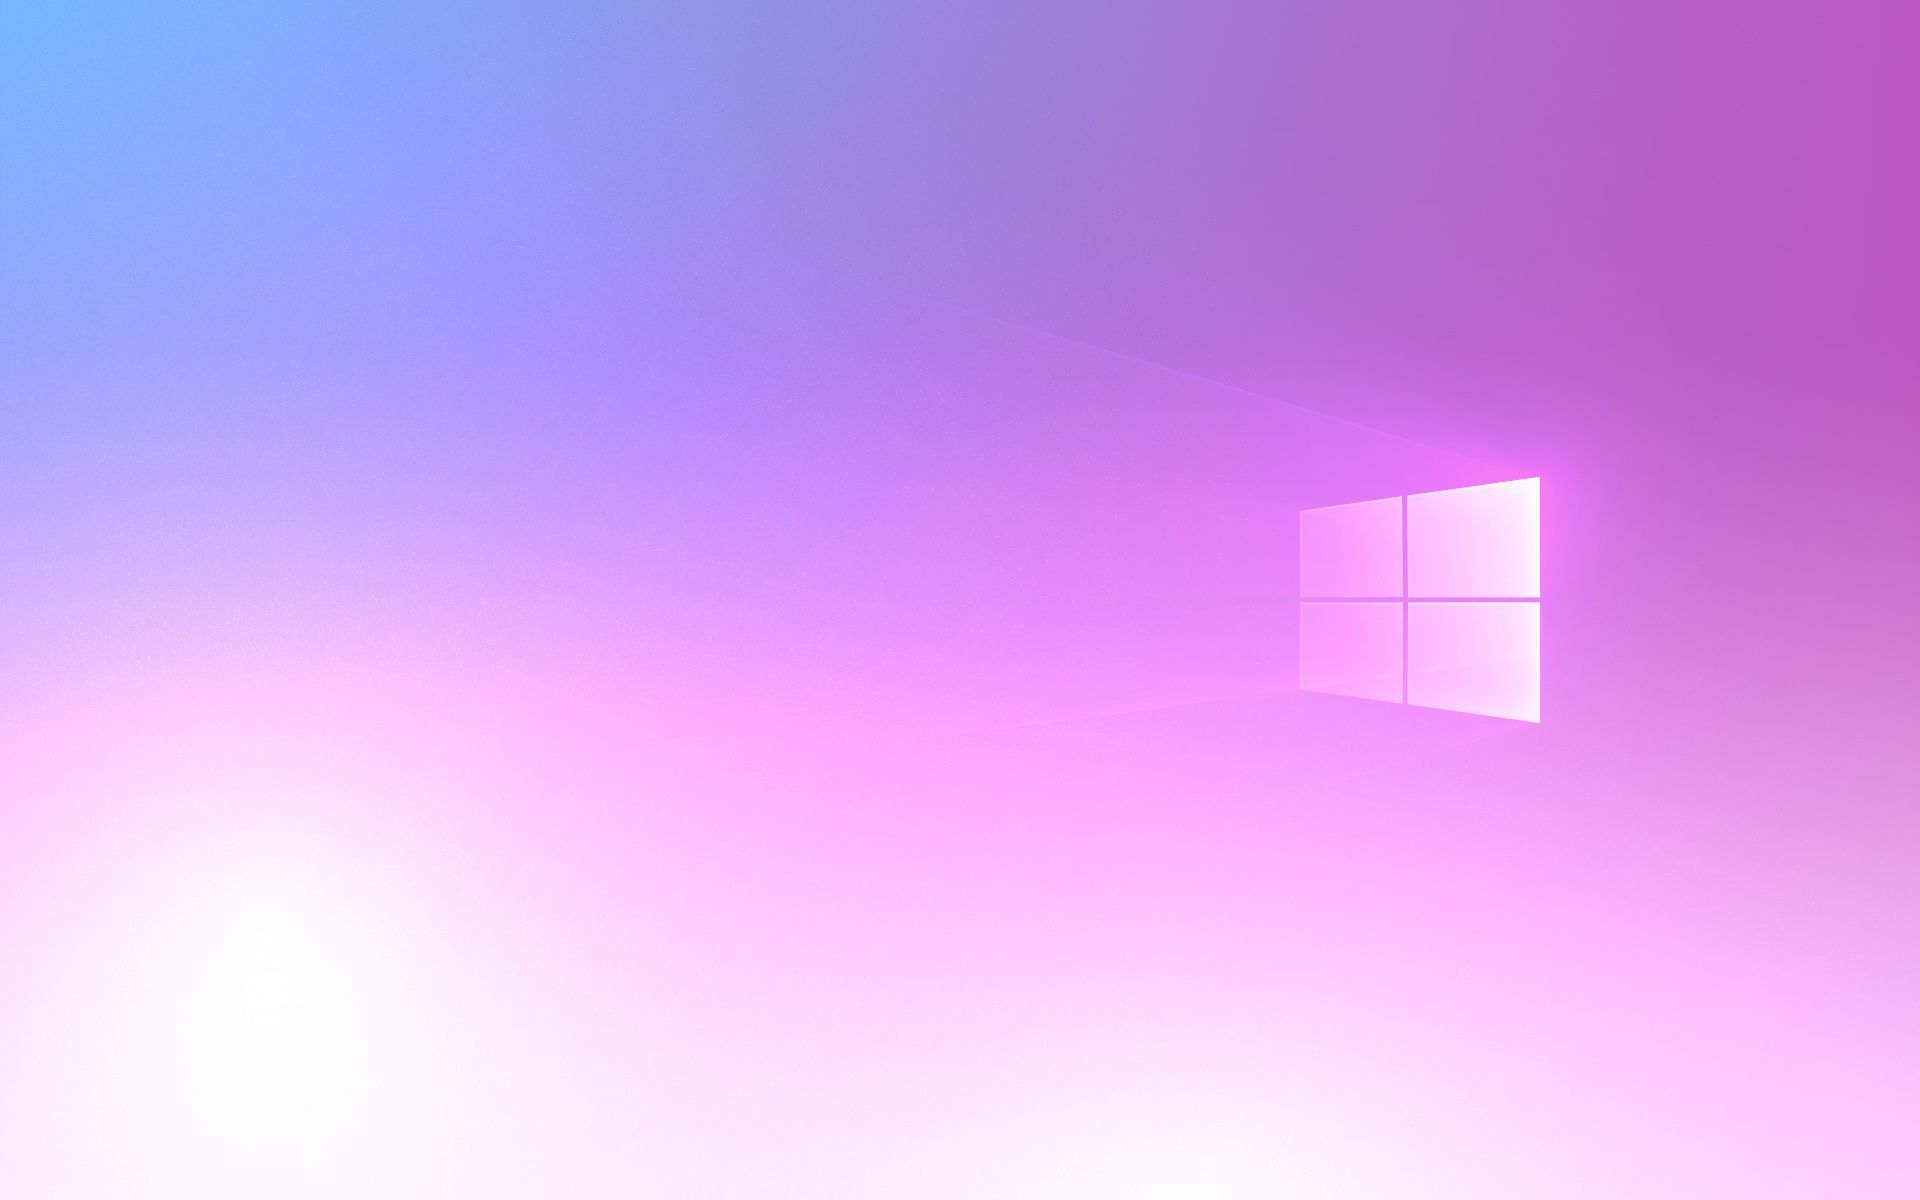 Hình nền Windows 10 màu tím - Wallpaper Cave: Hãy khám phá với chúng tôi những hình nền Windows 10 màu tím đẹp nhất tại Wallpaper Cave. Bạn sẽ bị cuốn hút bởi những hình ảnh tuyệt đẹp, mang đến cho máy tính của bạn một phong cách mới lạ, rất ấn tượng.